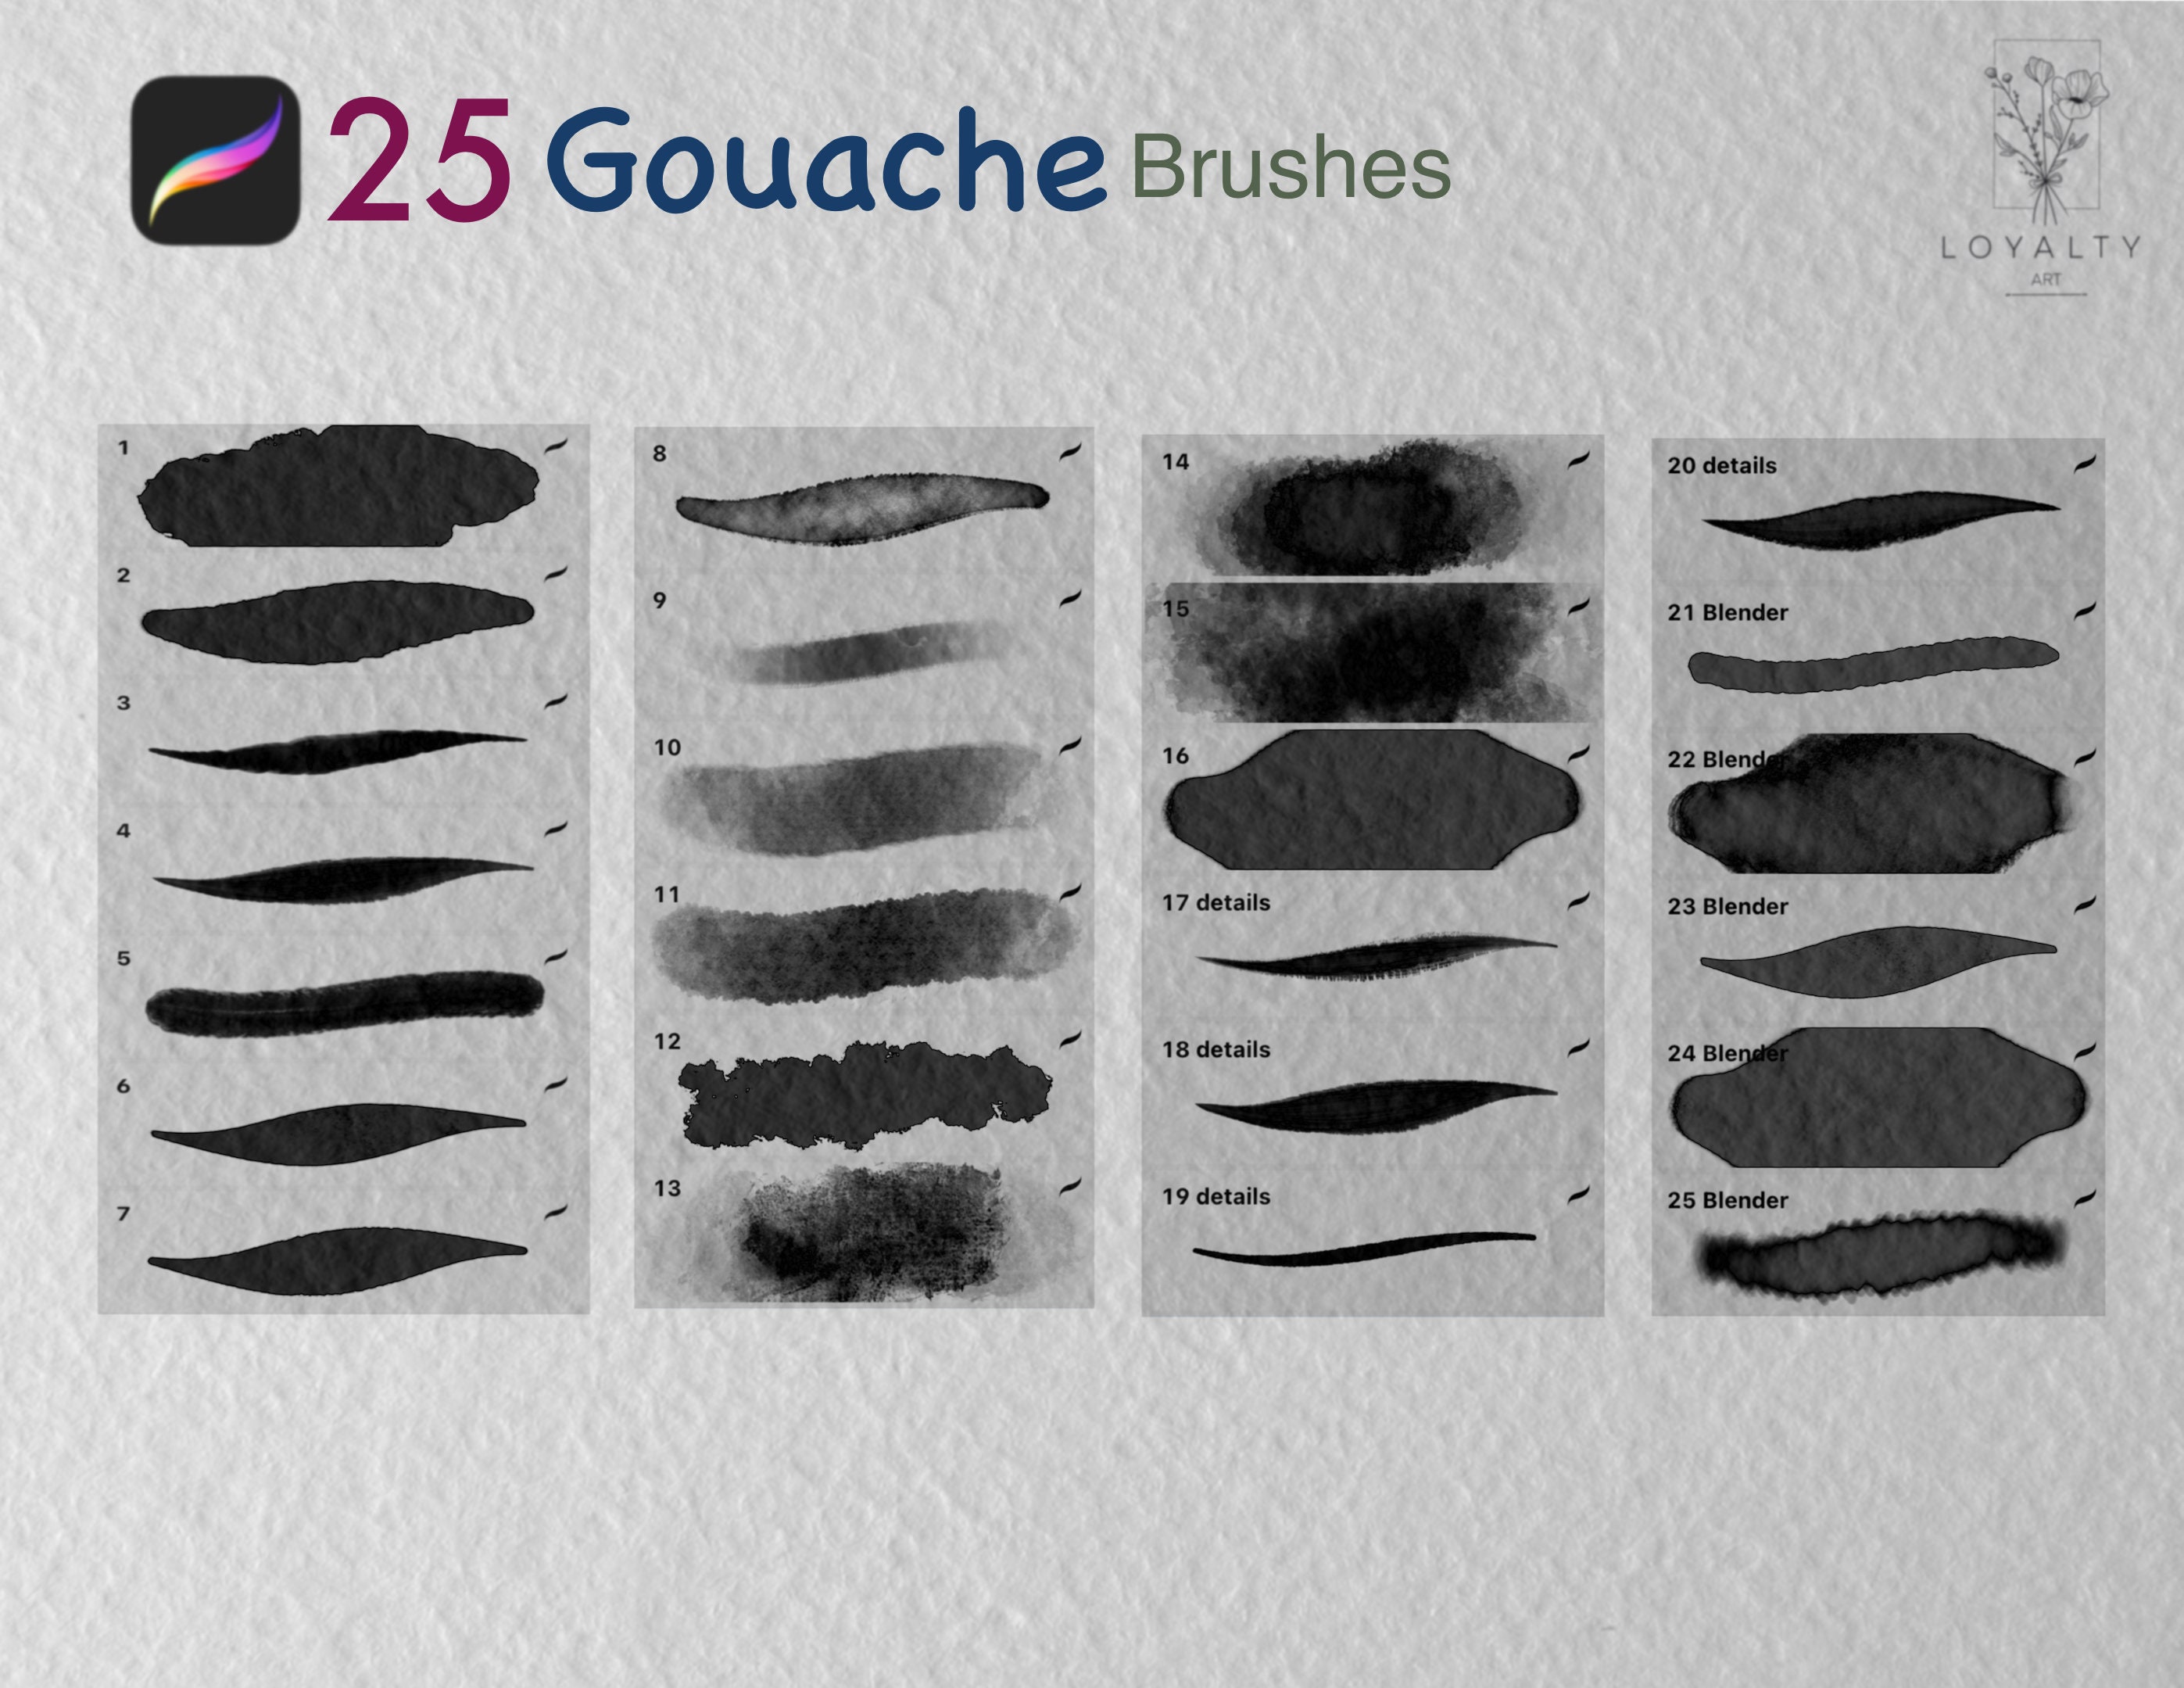 Gouache Brushes For Procreate - Inspire Uplift